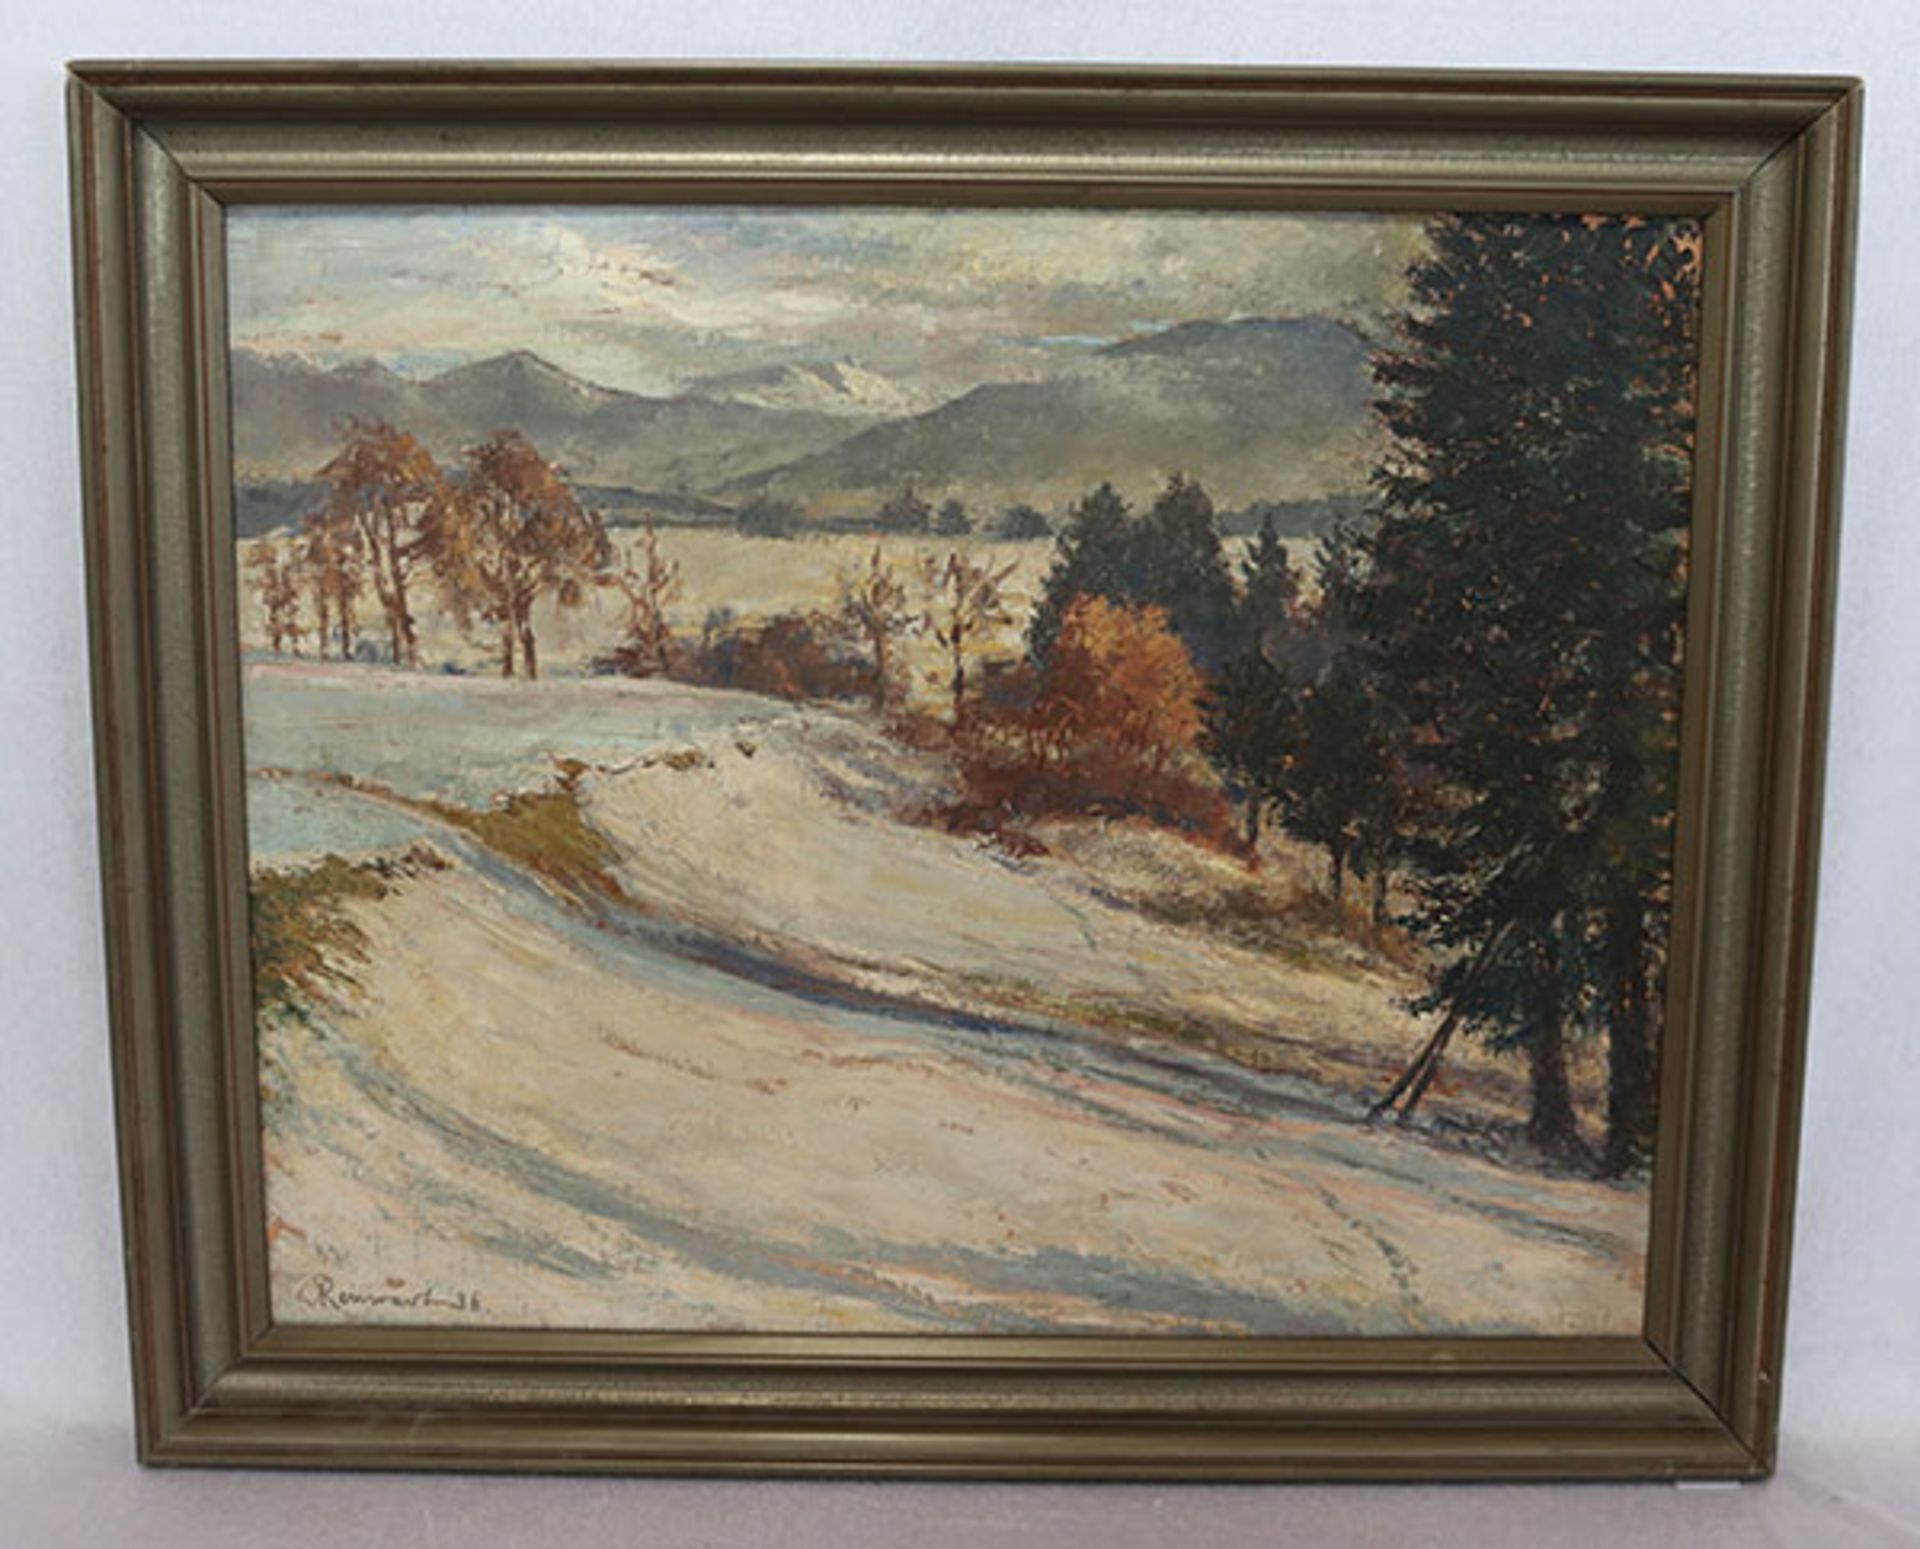 Gemälde ÖL/LW 'Voralpenlandschaft im Winter', signiert Reinwart 36, LW beschädigt, teils